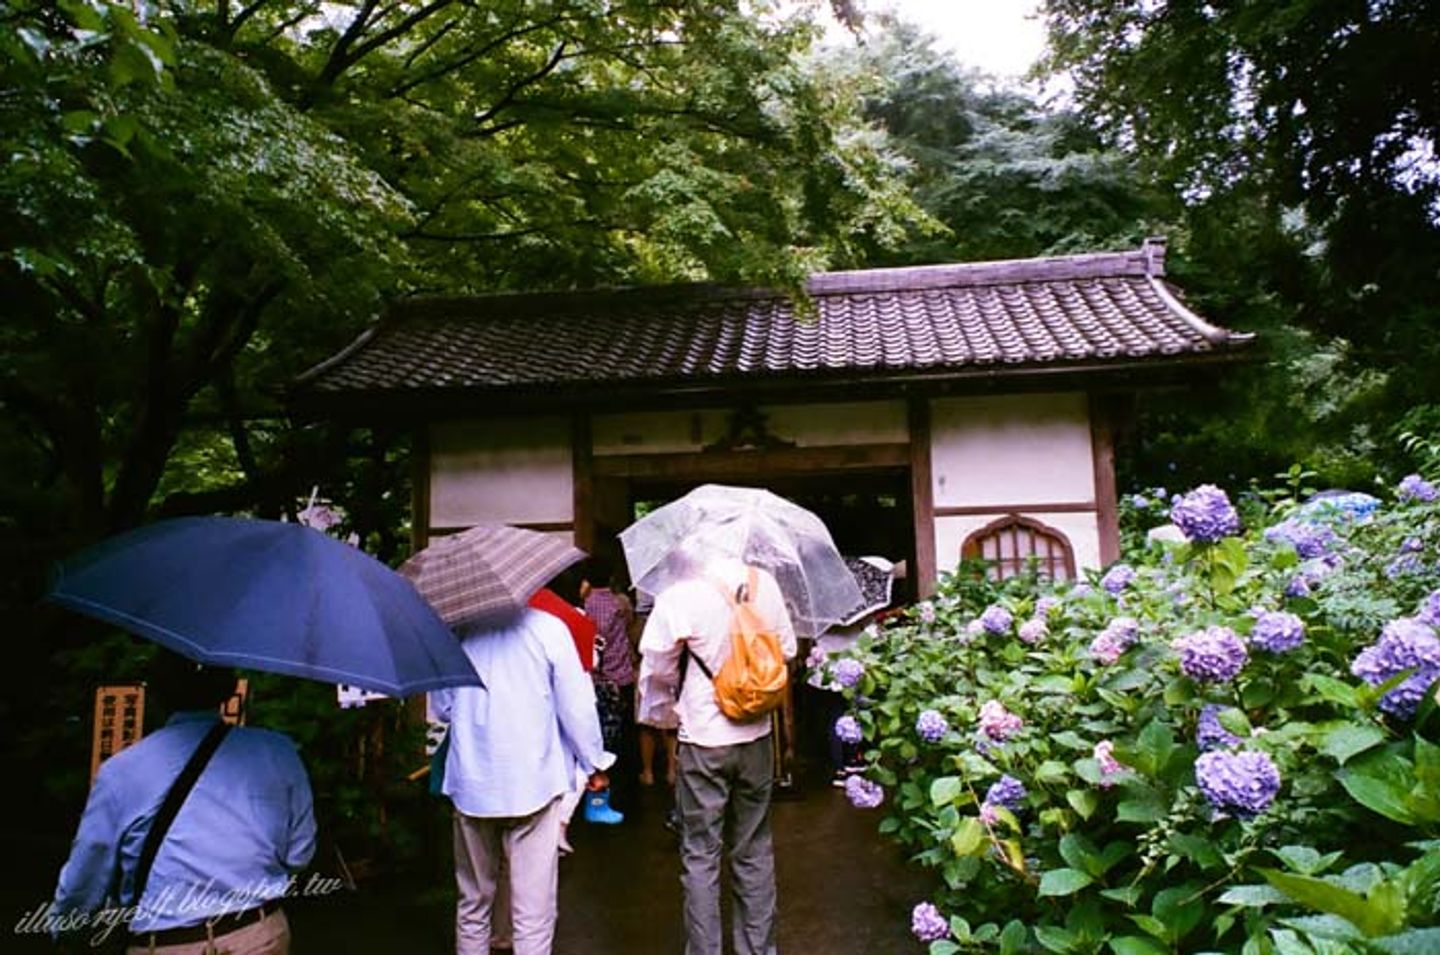 北鎌倉 明月院 雨季紫陽與傘軍相伴 日本 東京 關東 旅行酒吧